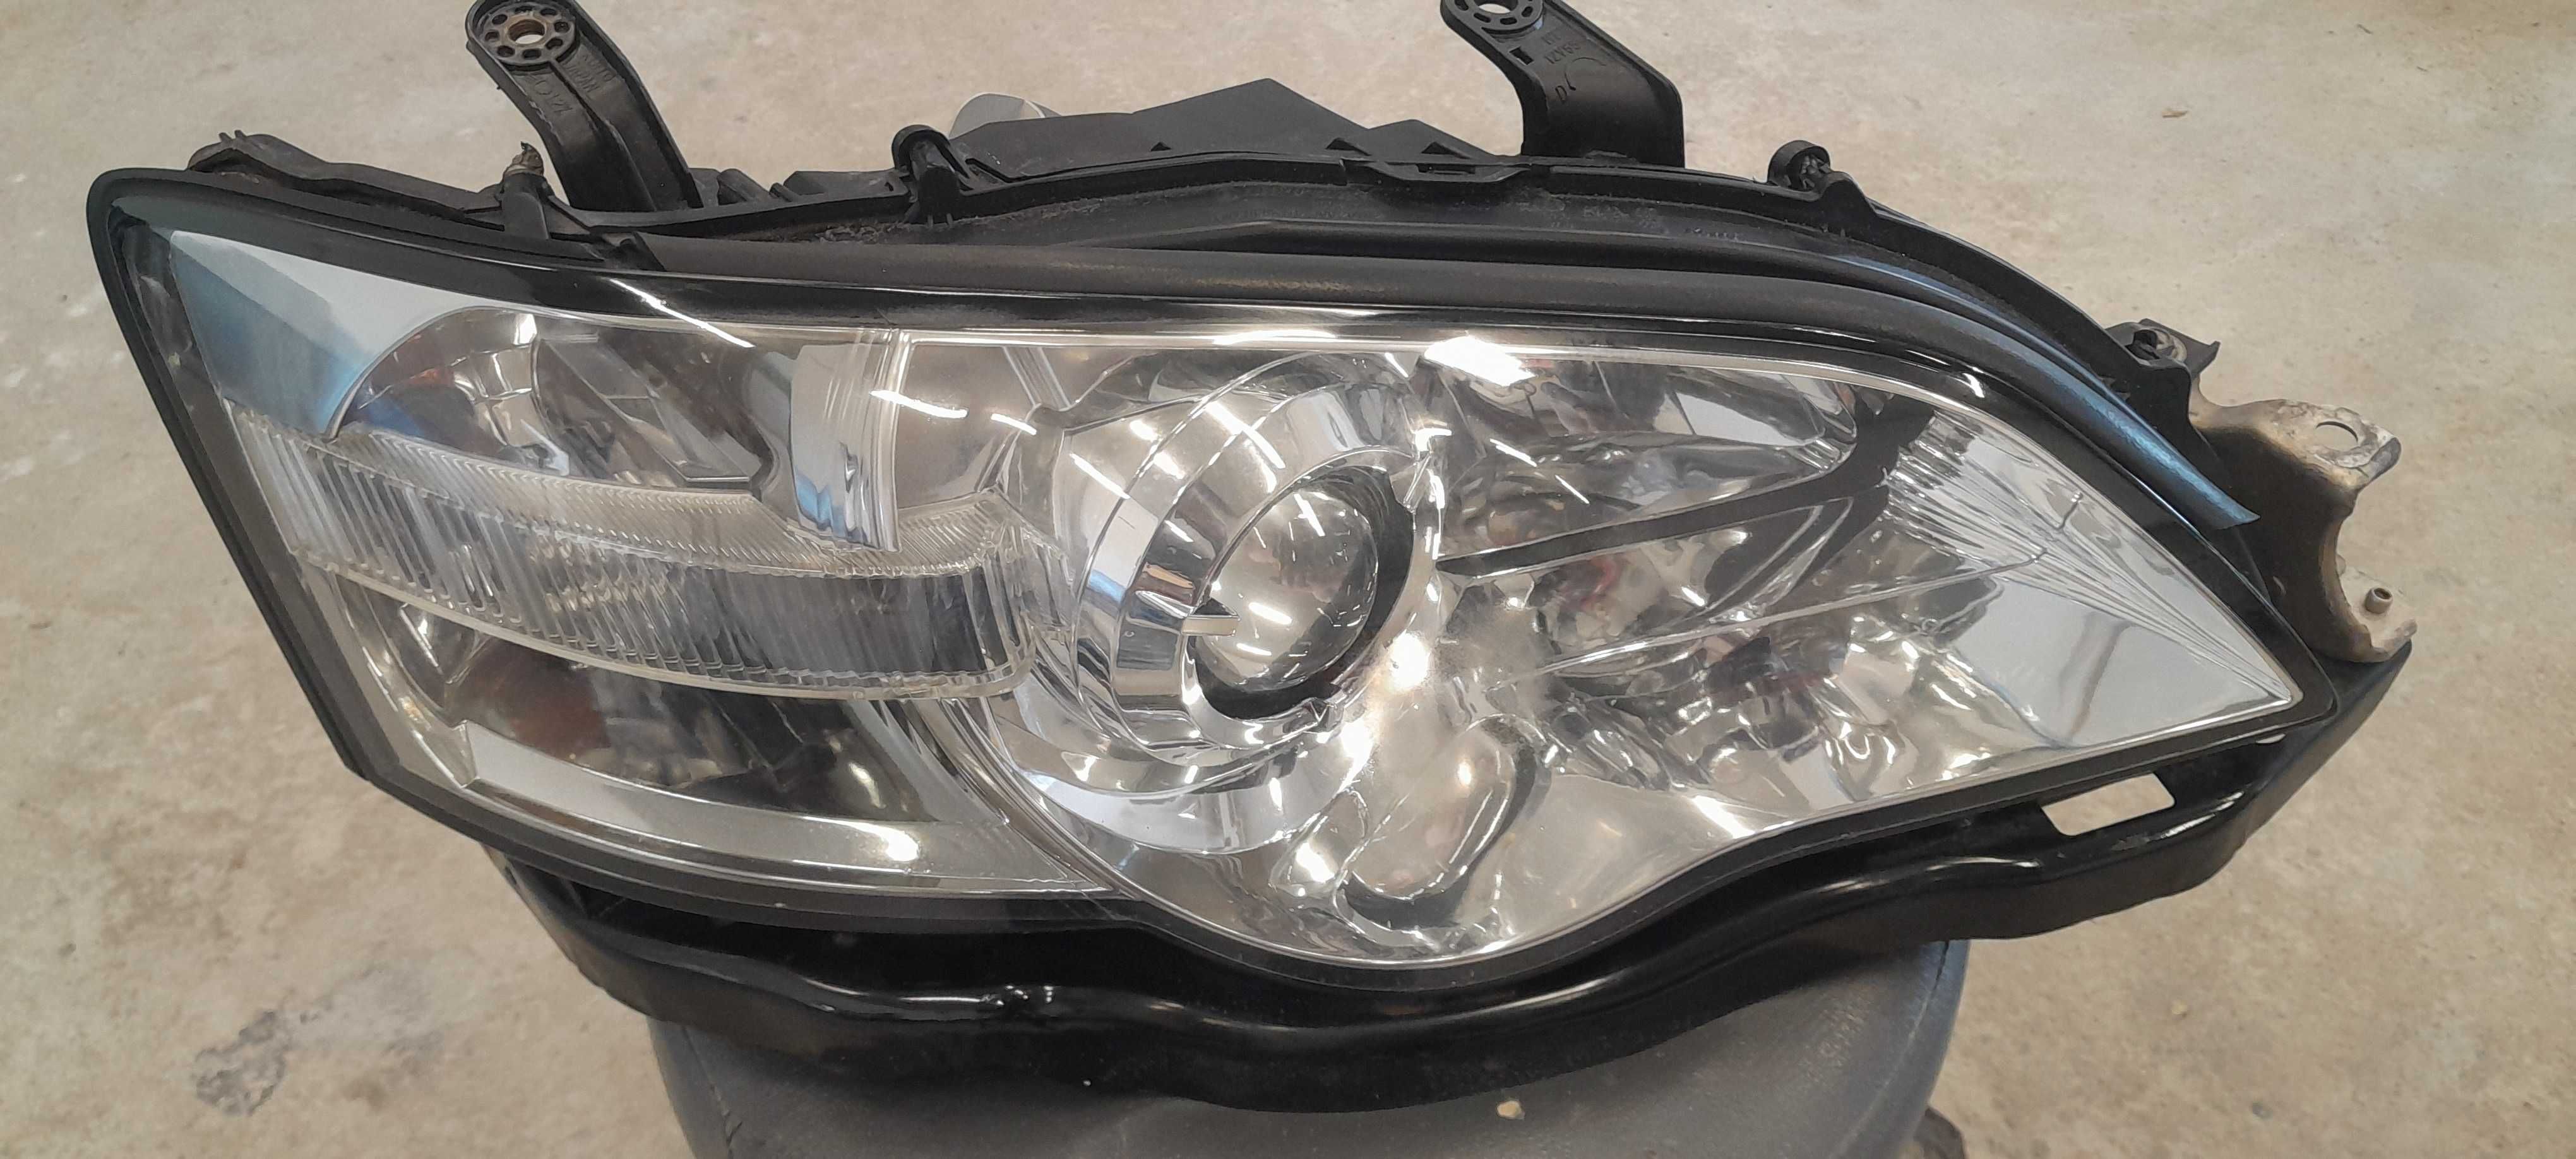 Lampa Subaru Legacy IV Outback III prawa przód reflektor + ślizg